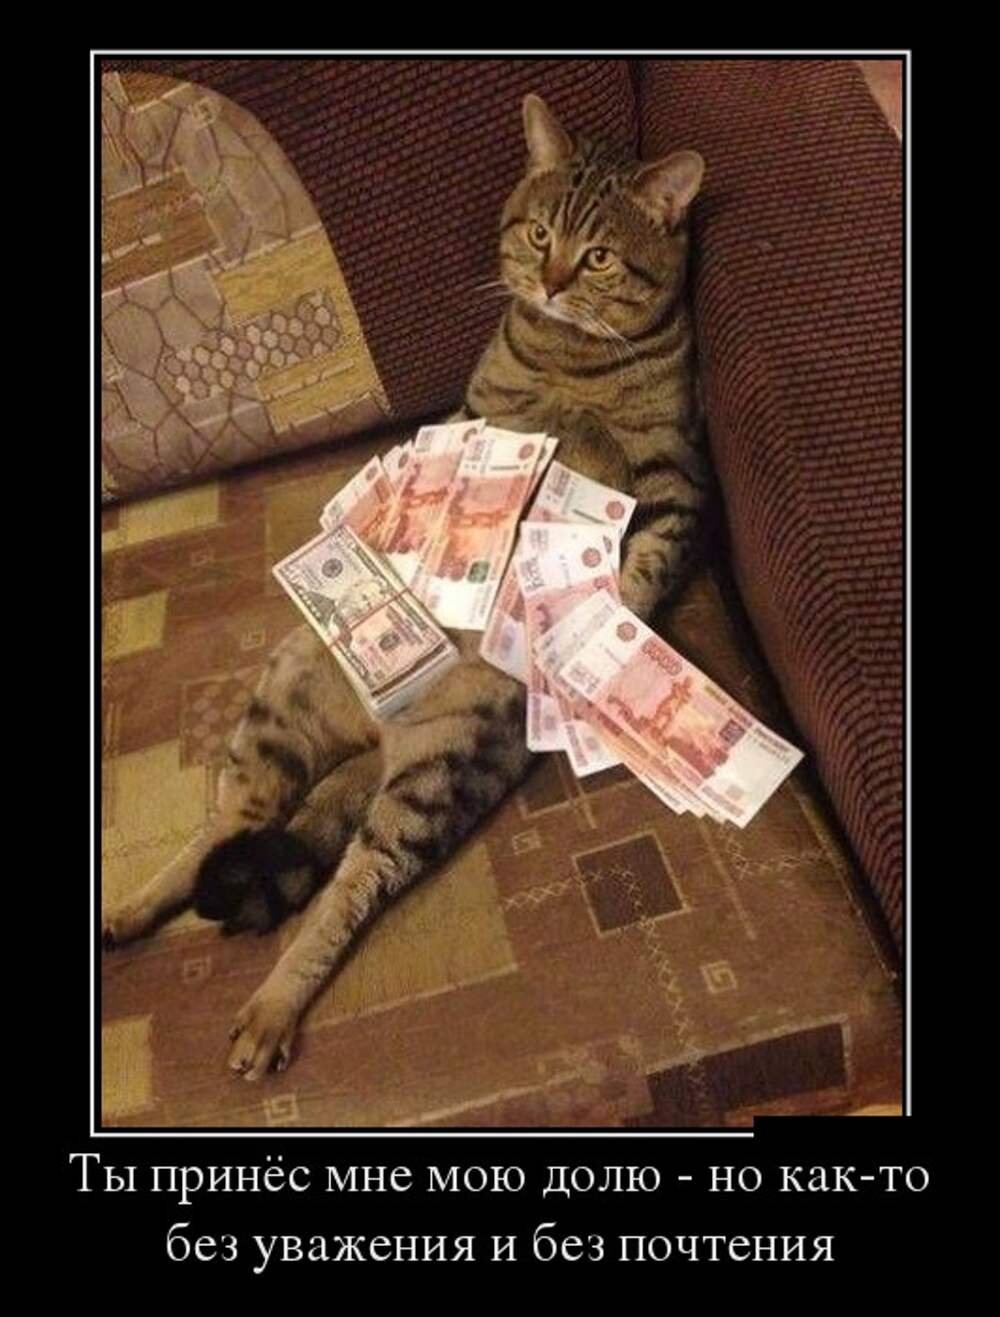 Возьму деньги в доле. Кот с деньгами. Картина денег смешная. Деньги прикол. Прикольные картины с деньгами.